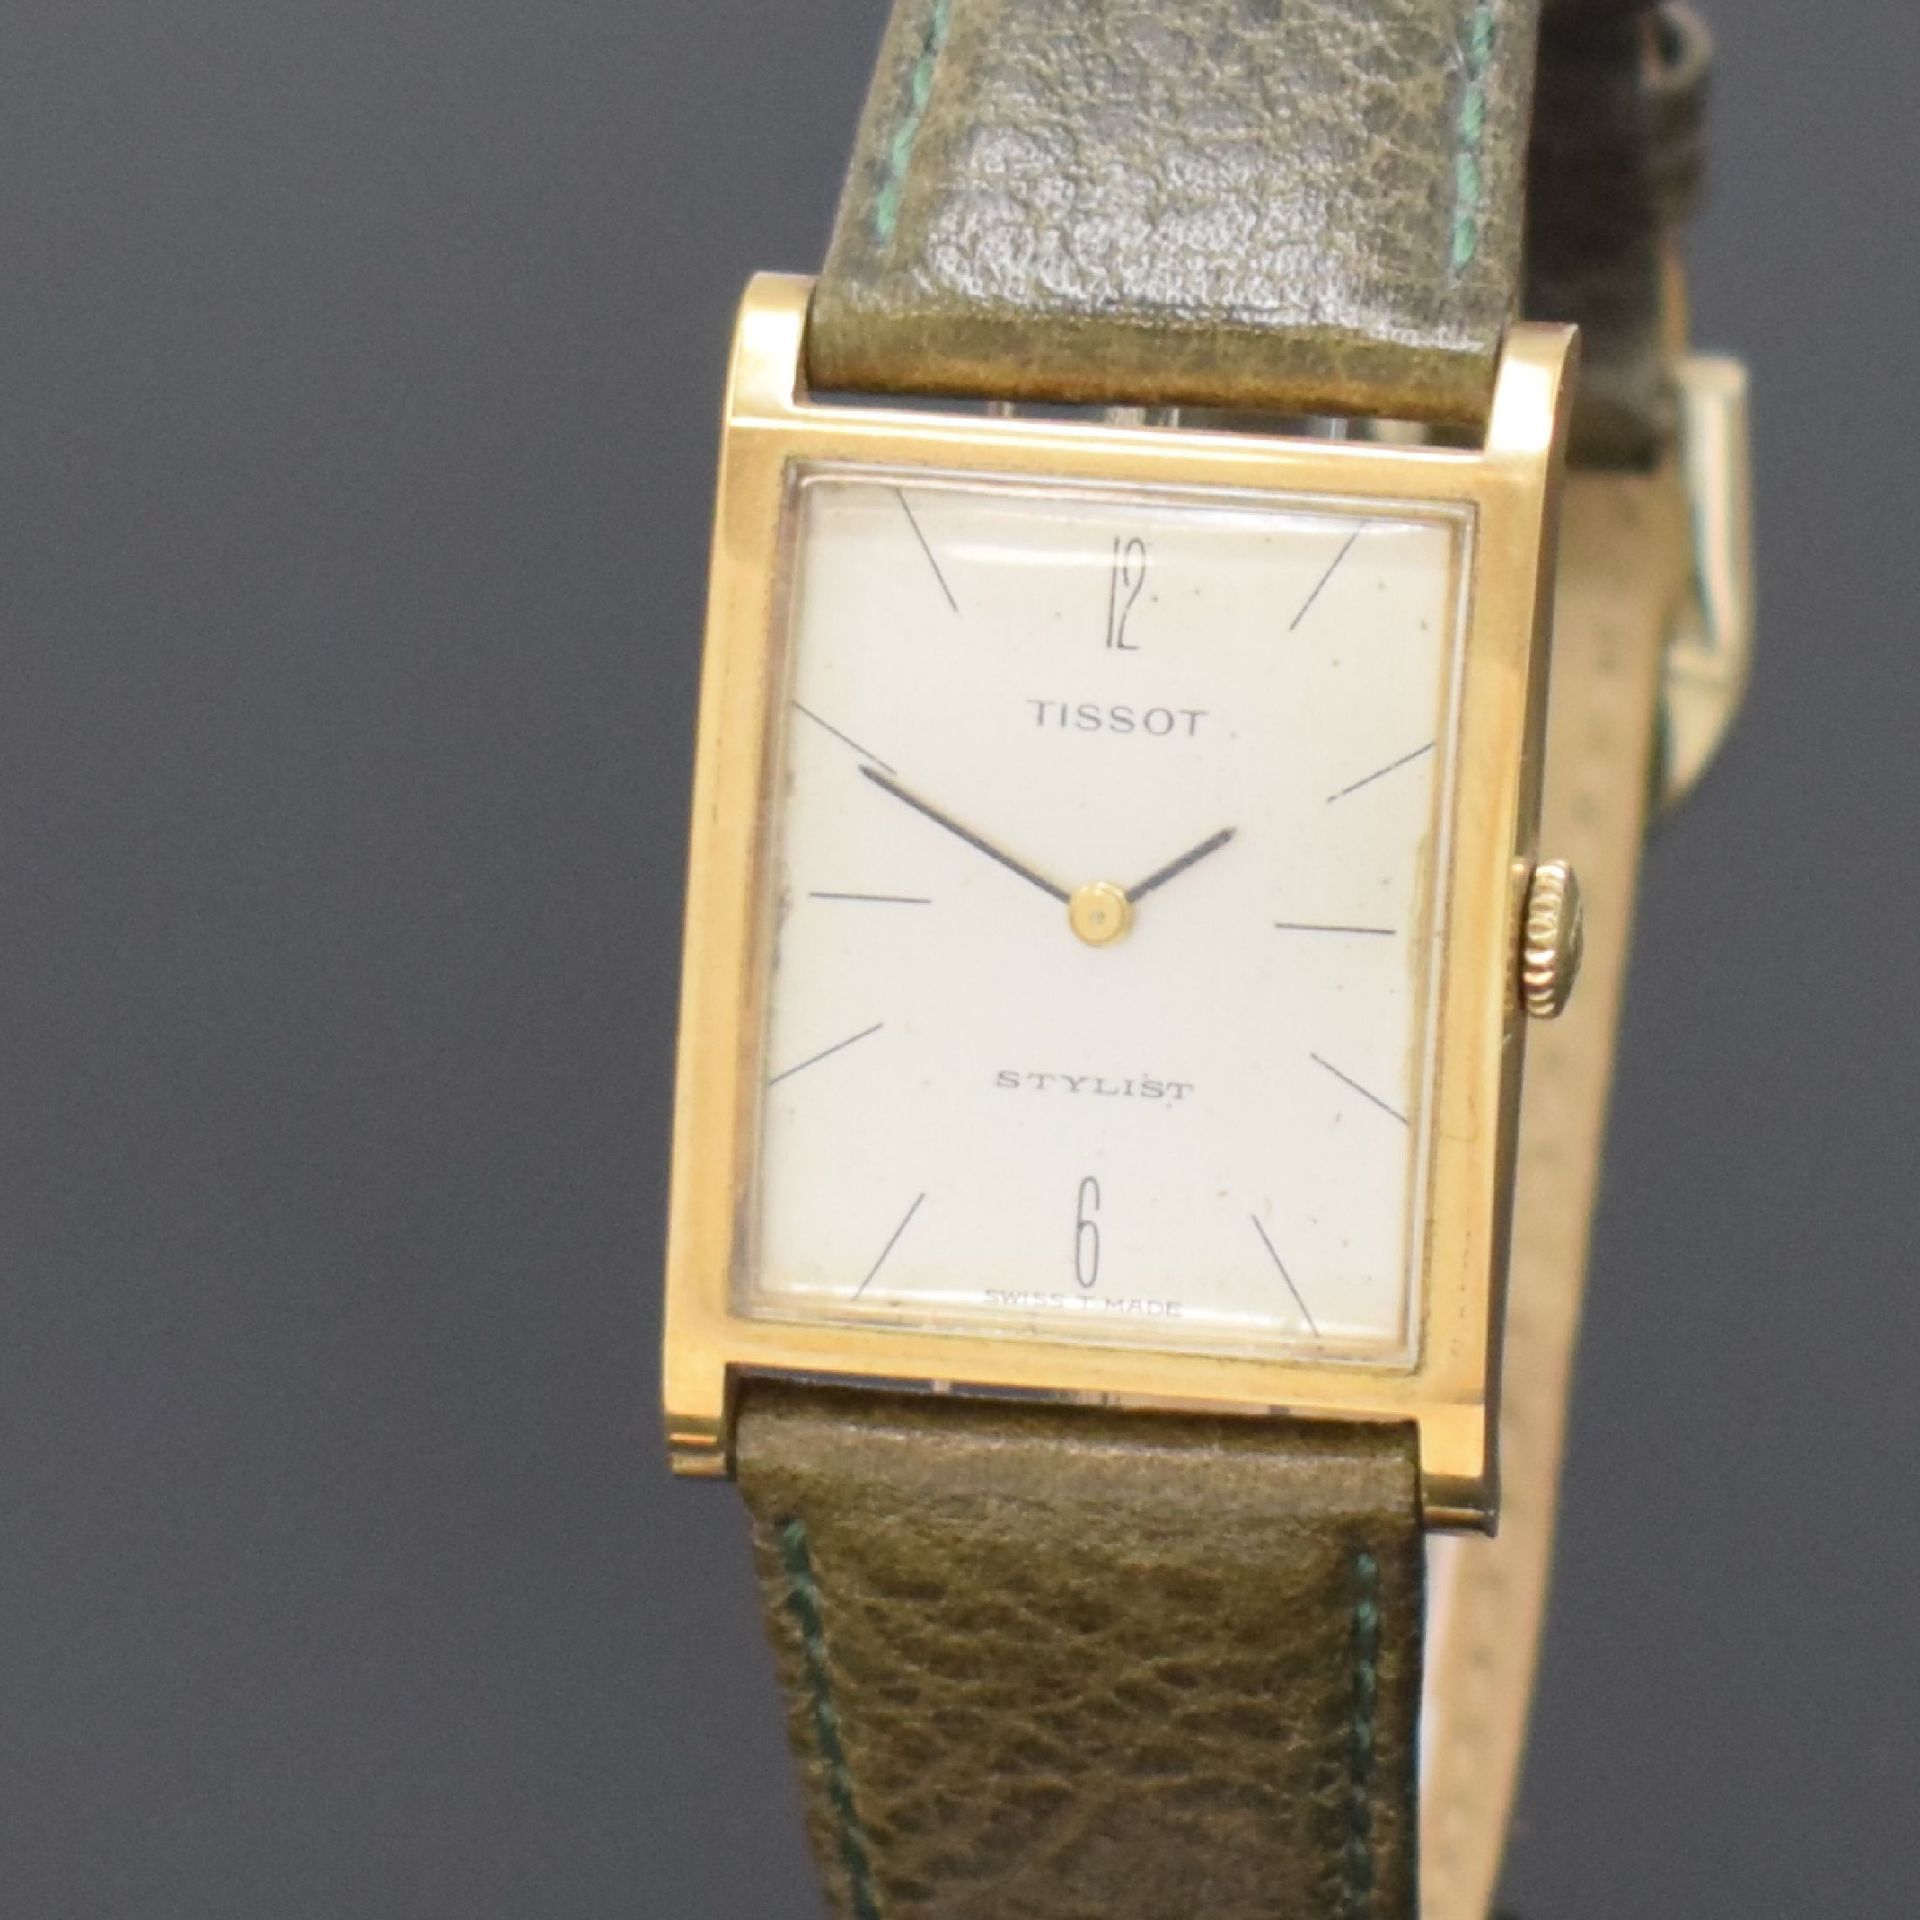 TISSOT Stylist Armbanduhr in GG 585/000, Schweiz um 1965, - Bild 2 aus 5